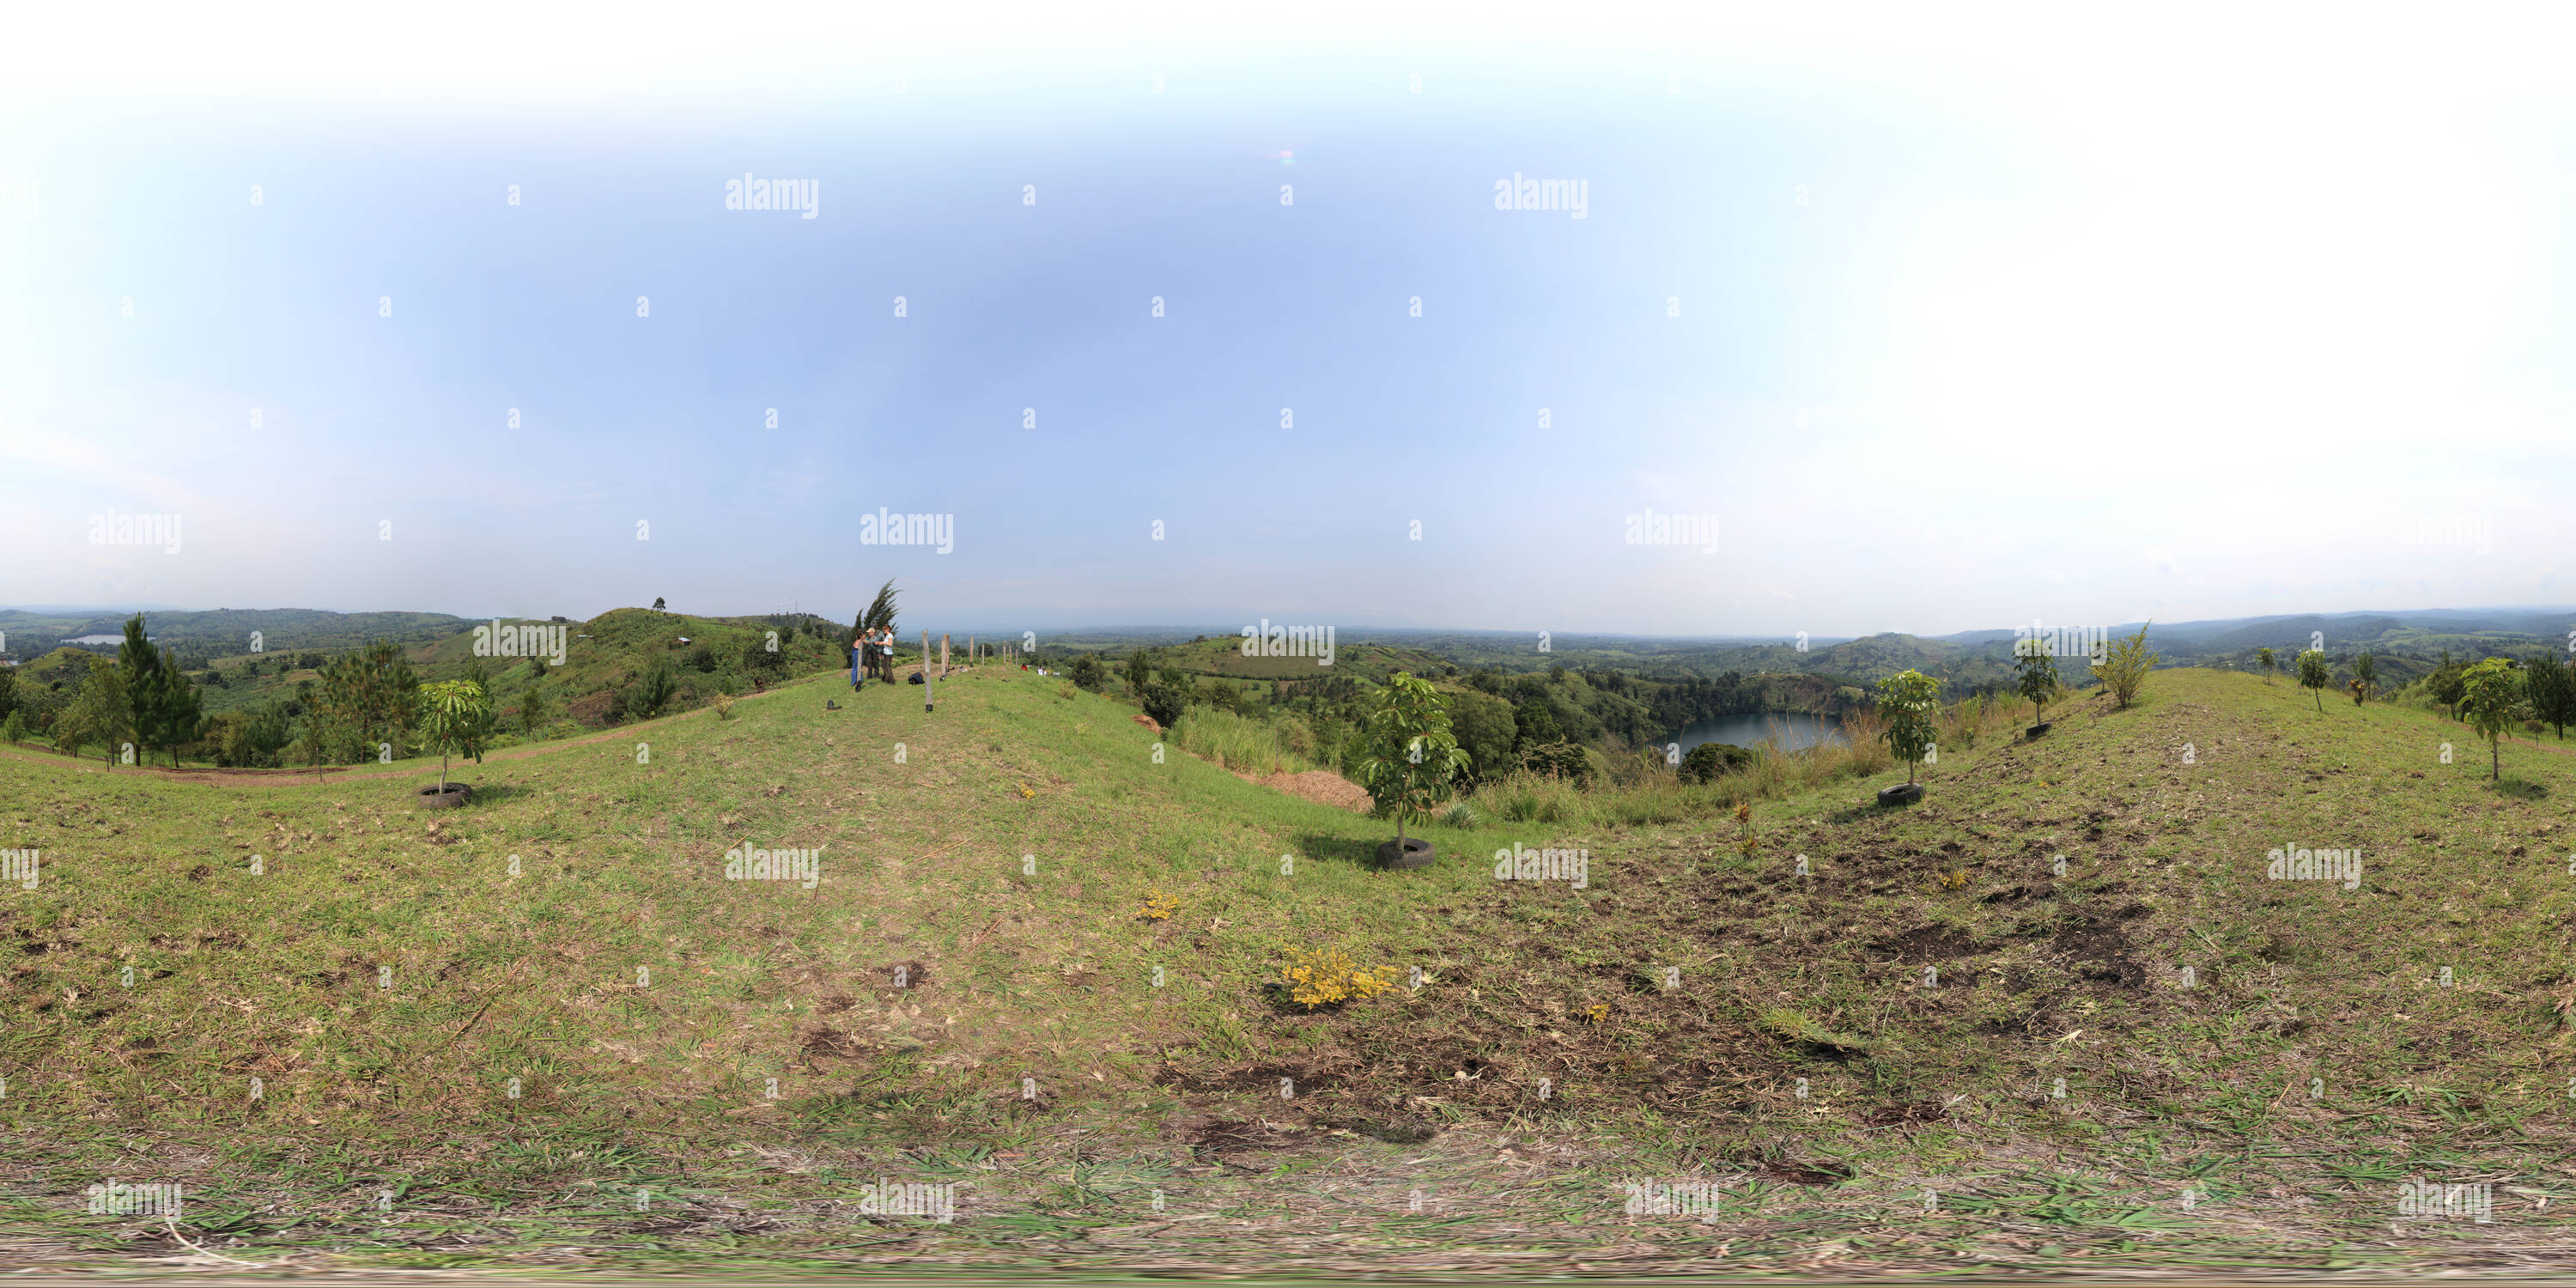 360 Grad Panorama Ansicht von Oben auf der ganzen Welt anzeigen